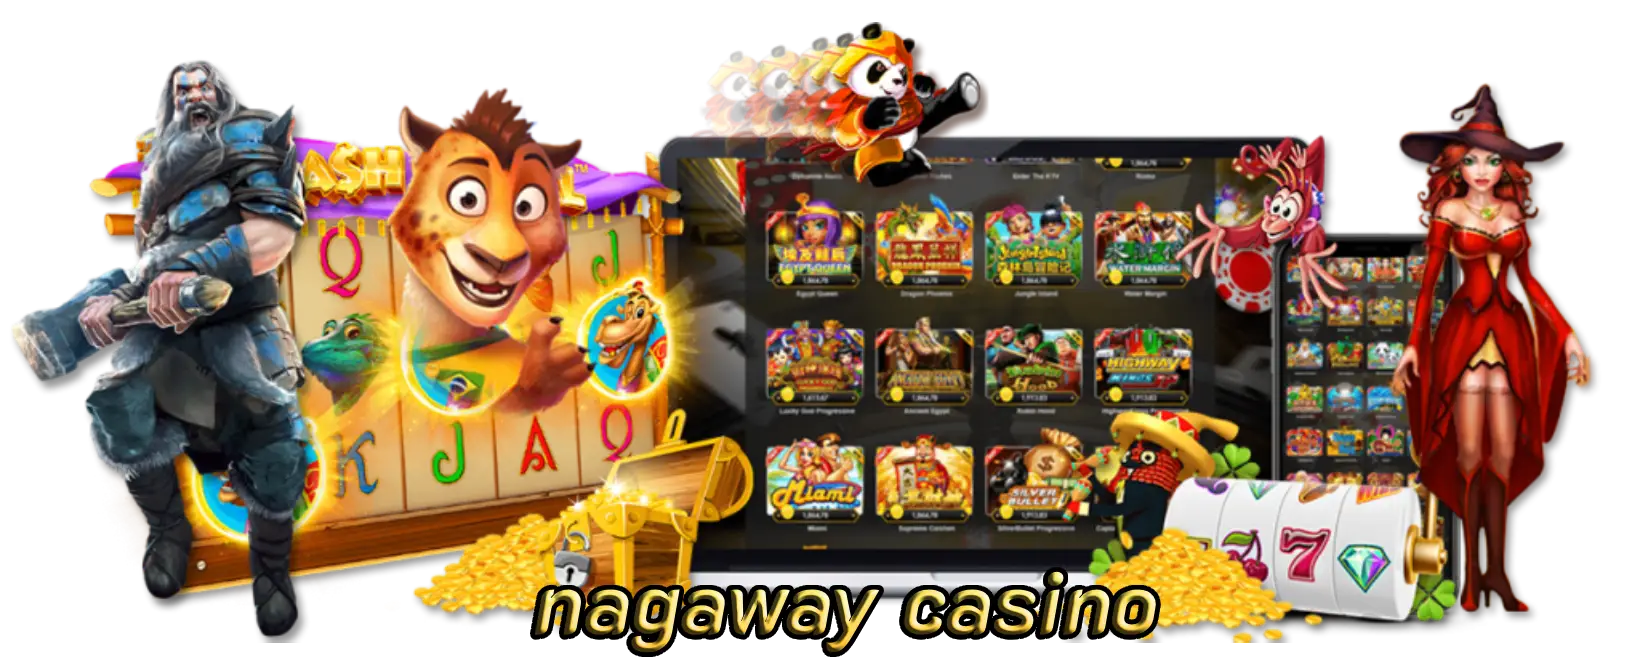 nagaway casino โปรโมชั่นของคาสิโนมากมายให้เลือกเล่น